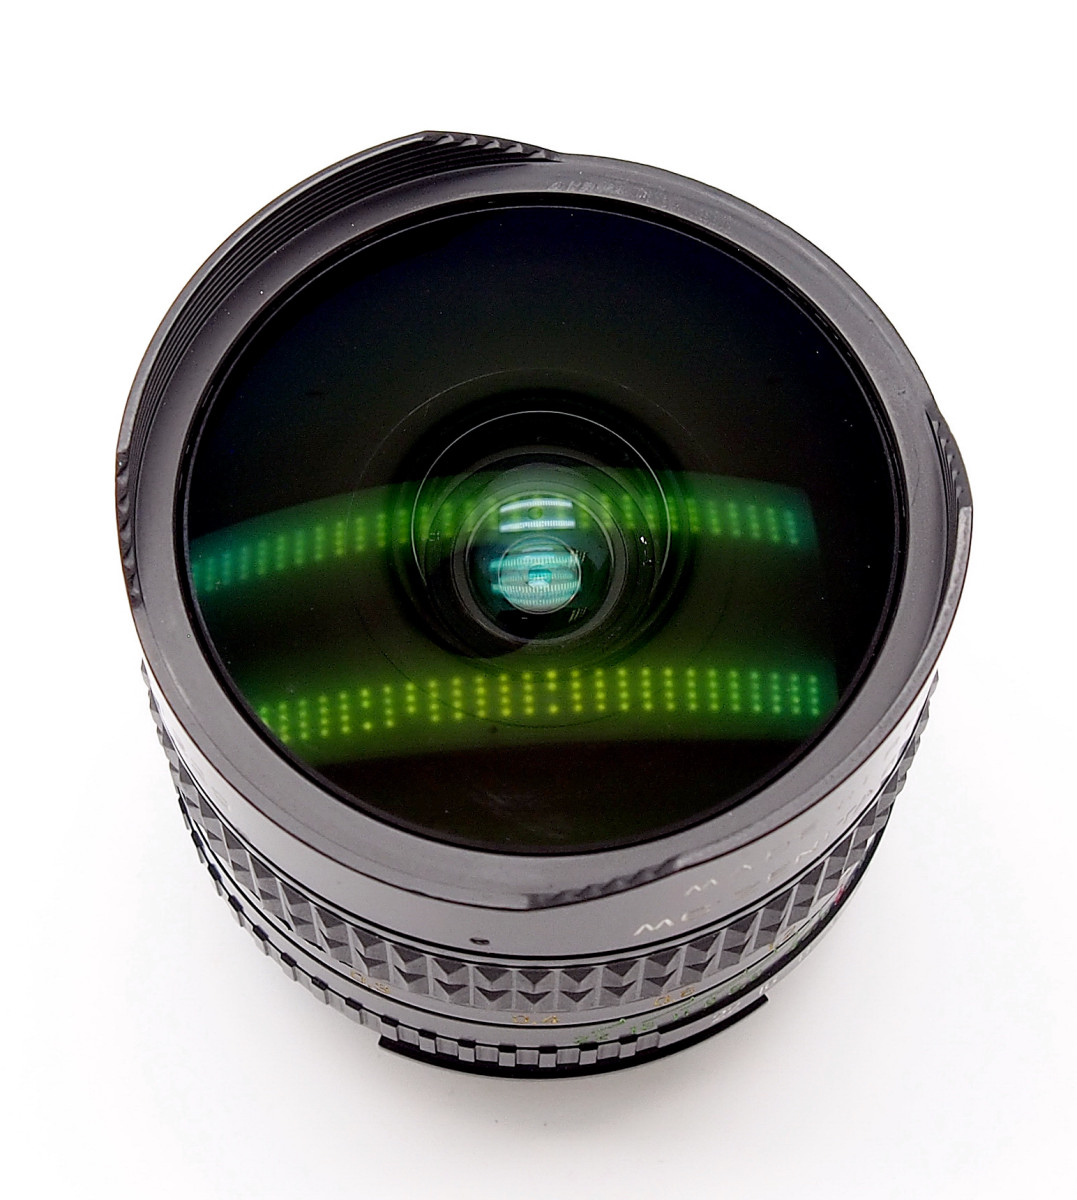 Nikon Ais Mount MC-Zenitar-N 16mm F2.8 Fisheye Lens #8614